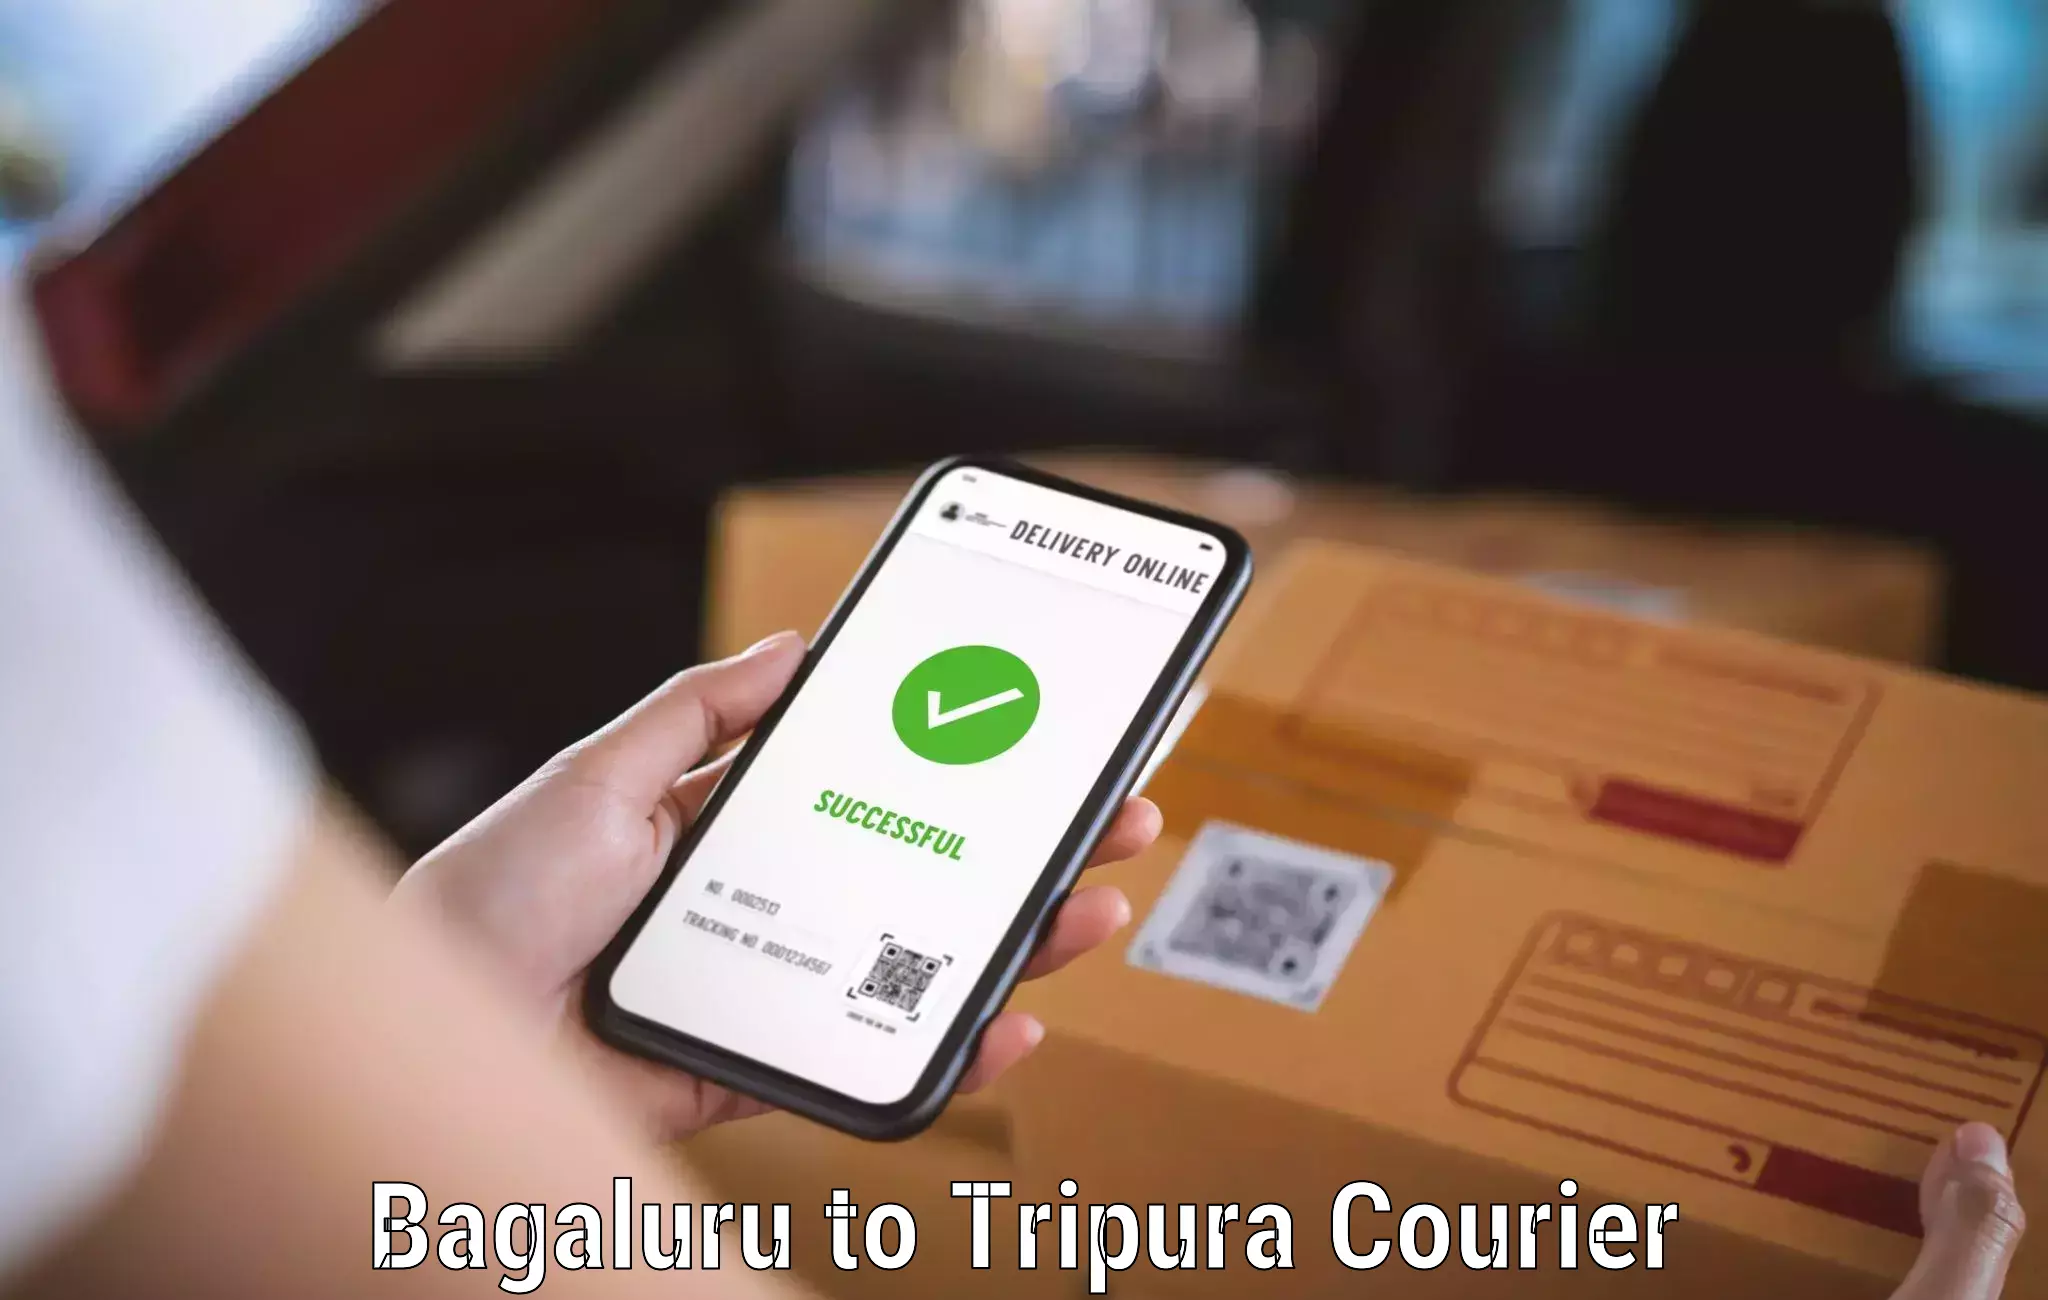 Affordable parcel service Bagaluru to Manughat